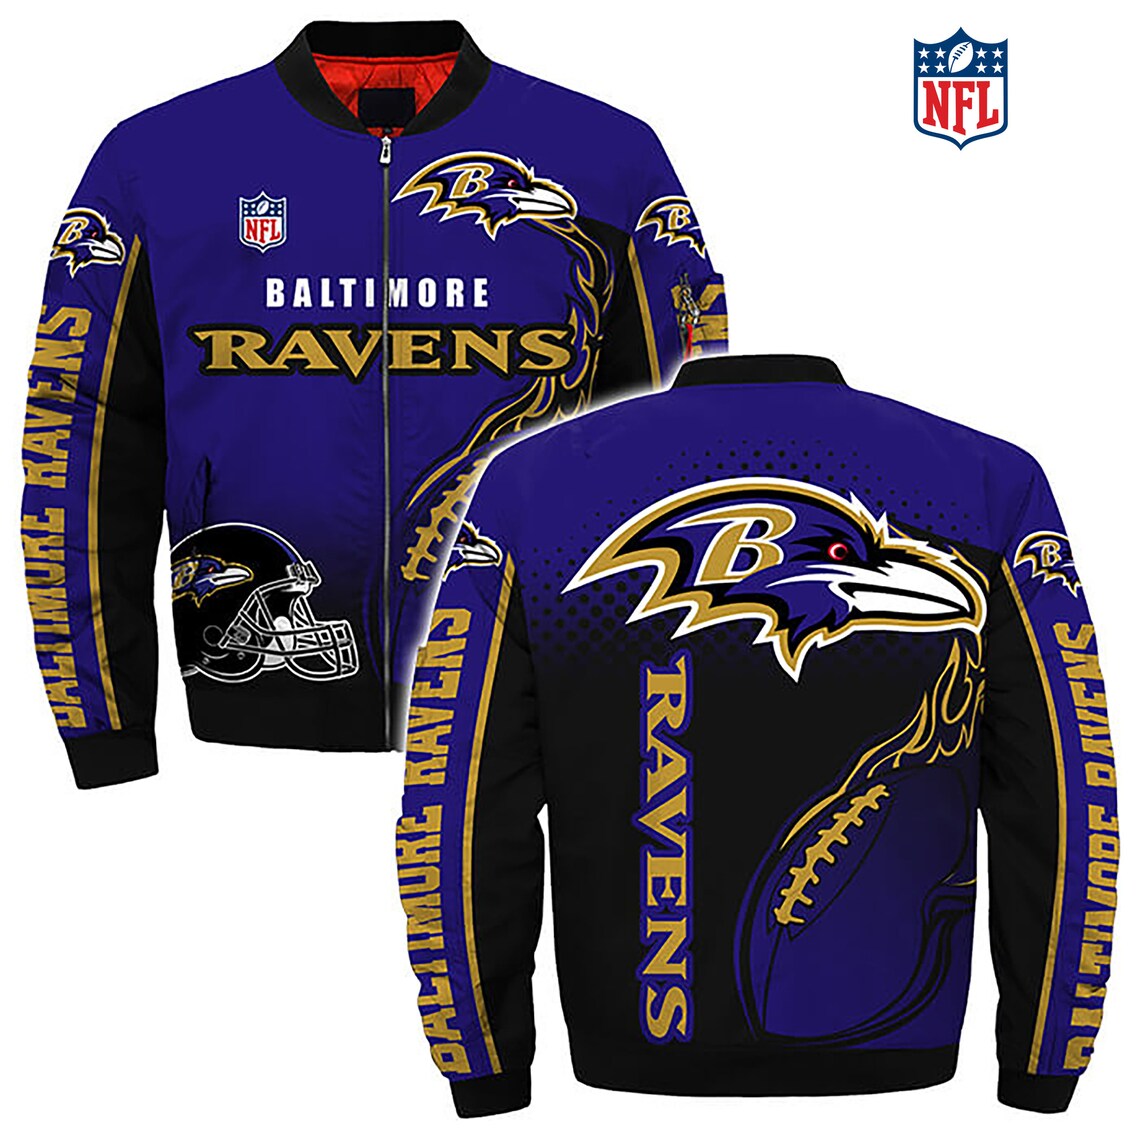 Baltimore Ravens NFL Football Team Apparel Best seller Gift | Etsy